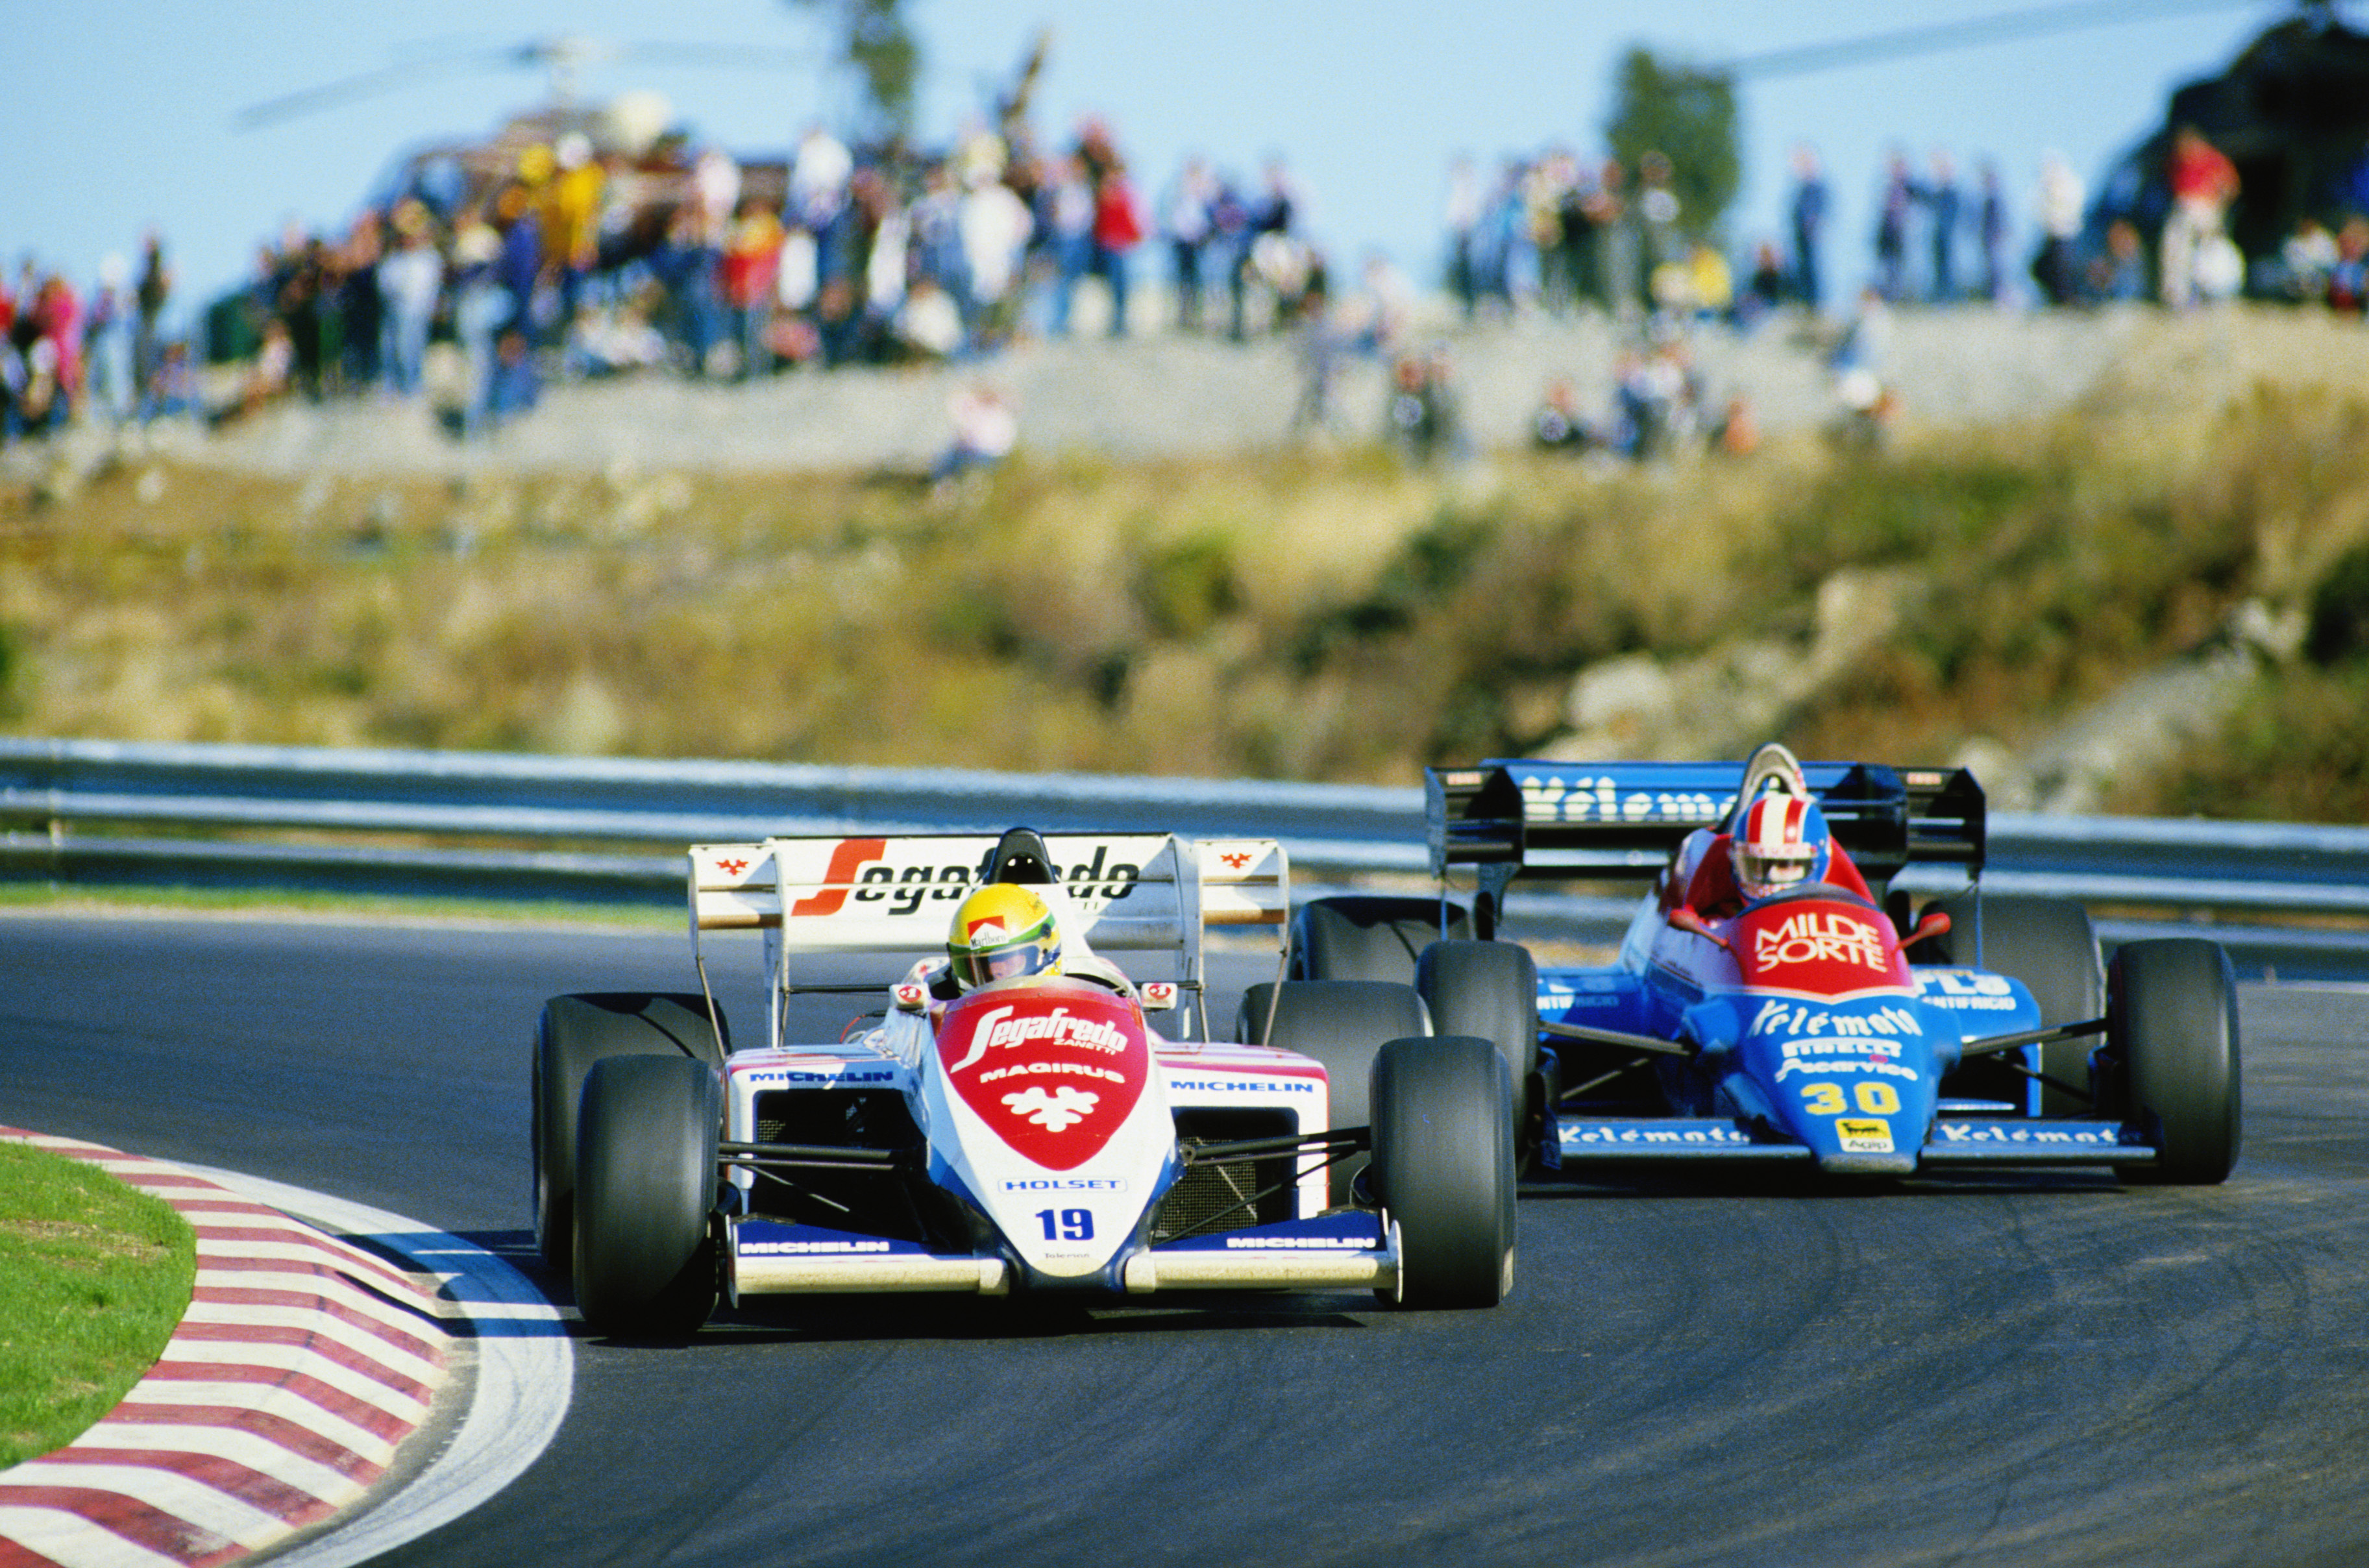 1984, Formula One, Ayrton Senna, Zandvoort, Toleman F1 - desktop wallpaper